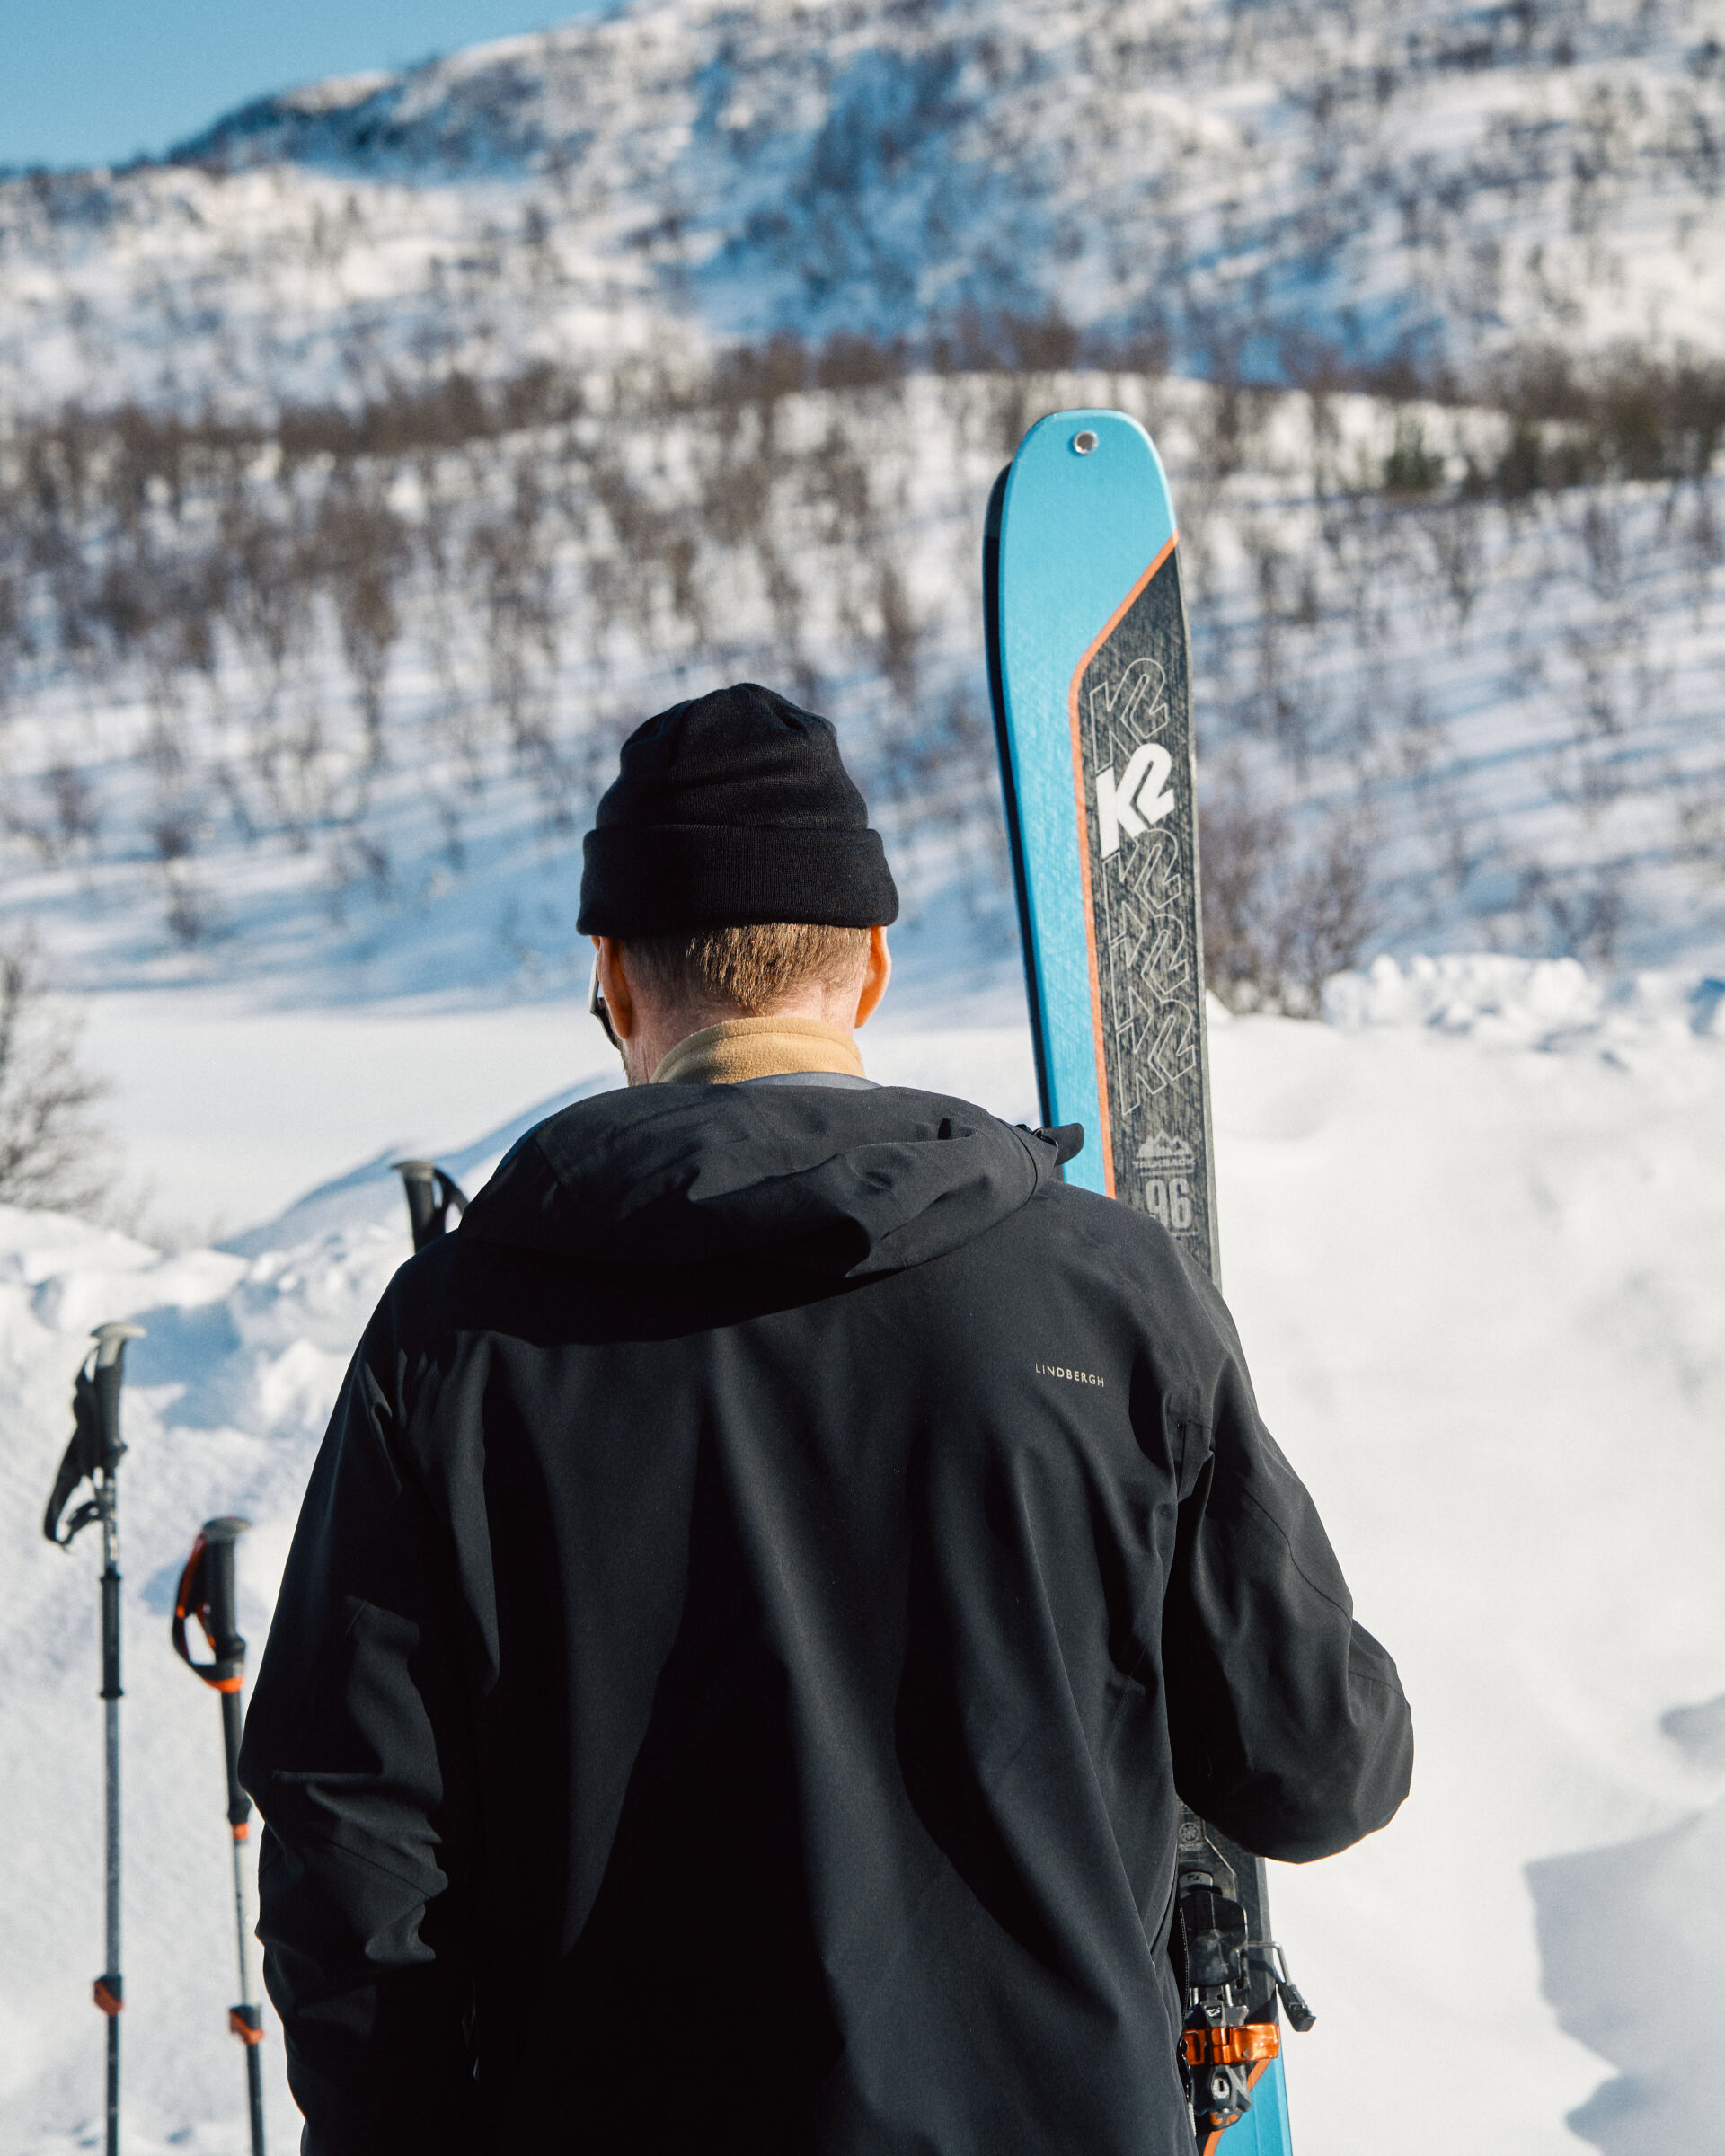 Man with skiis